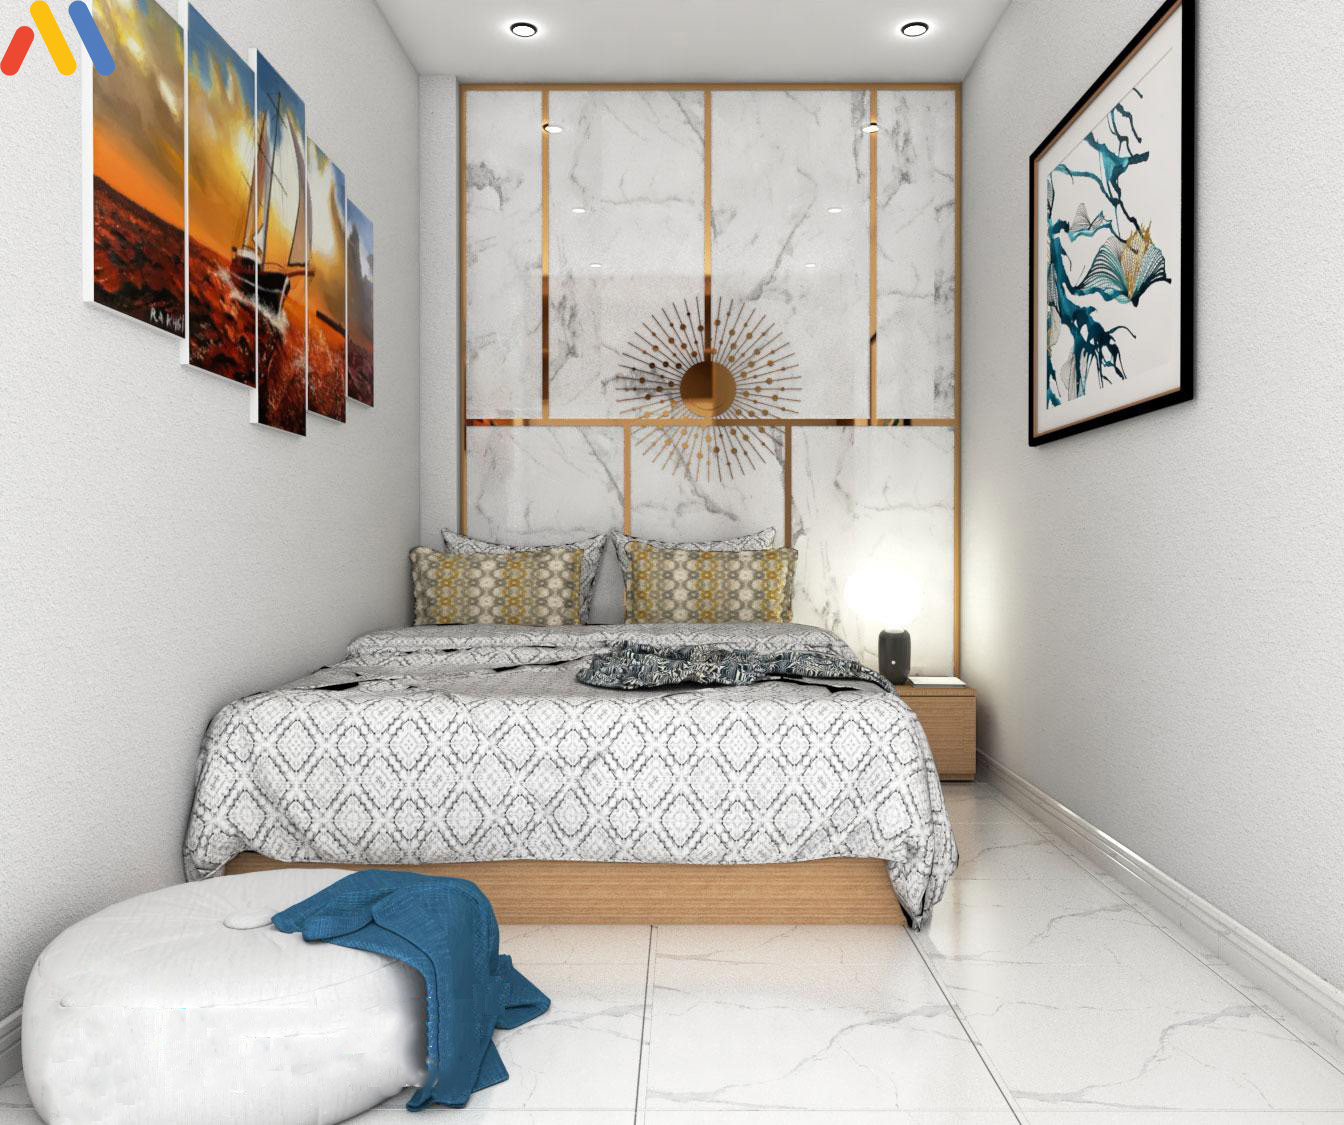 Các mẫu thiết kế nội thất cho phòng ngủ 10m2 theo phong cách hiện đại